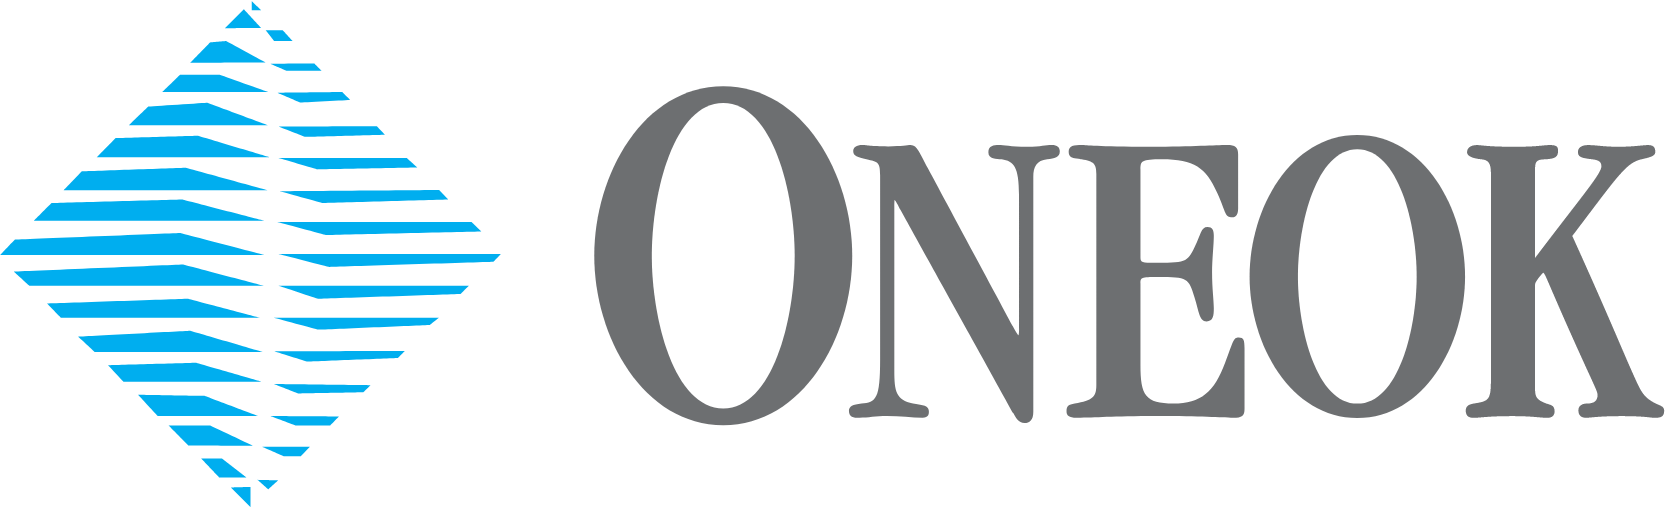 Oneok logo large (transparent PNG)